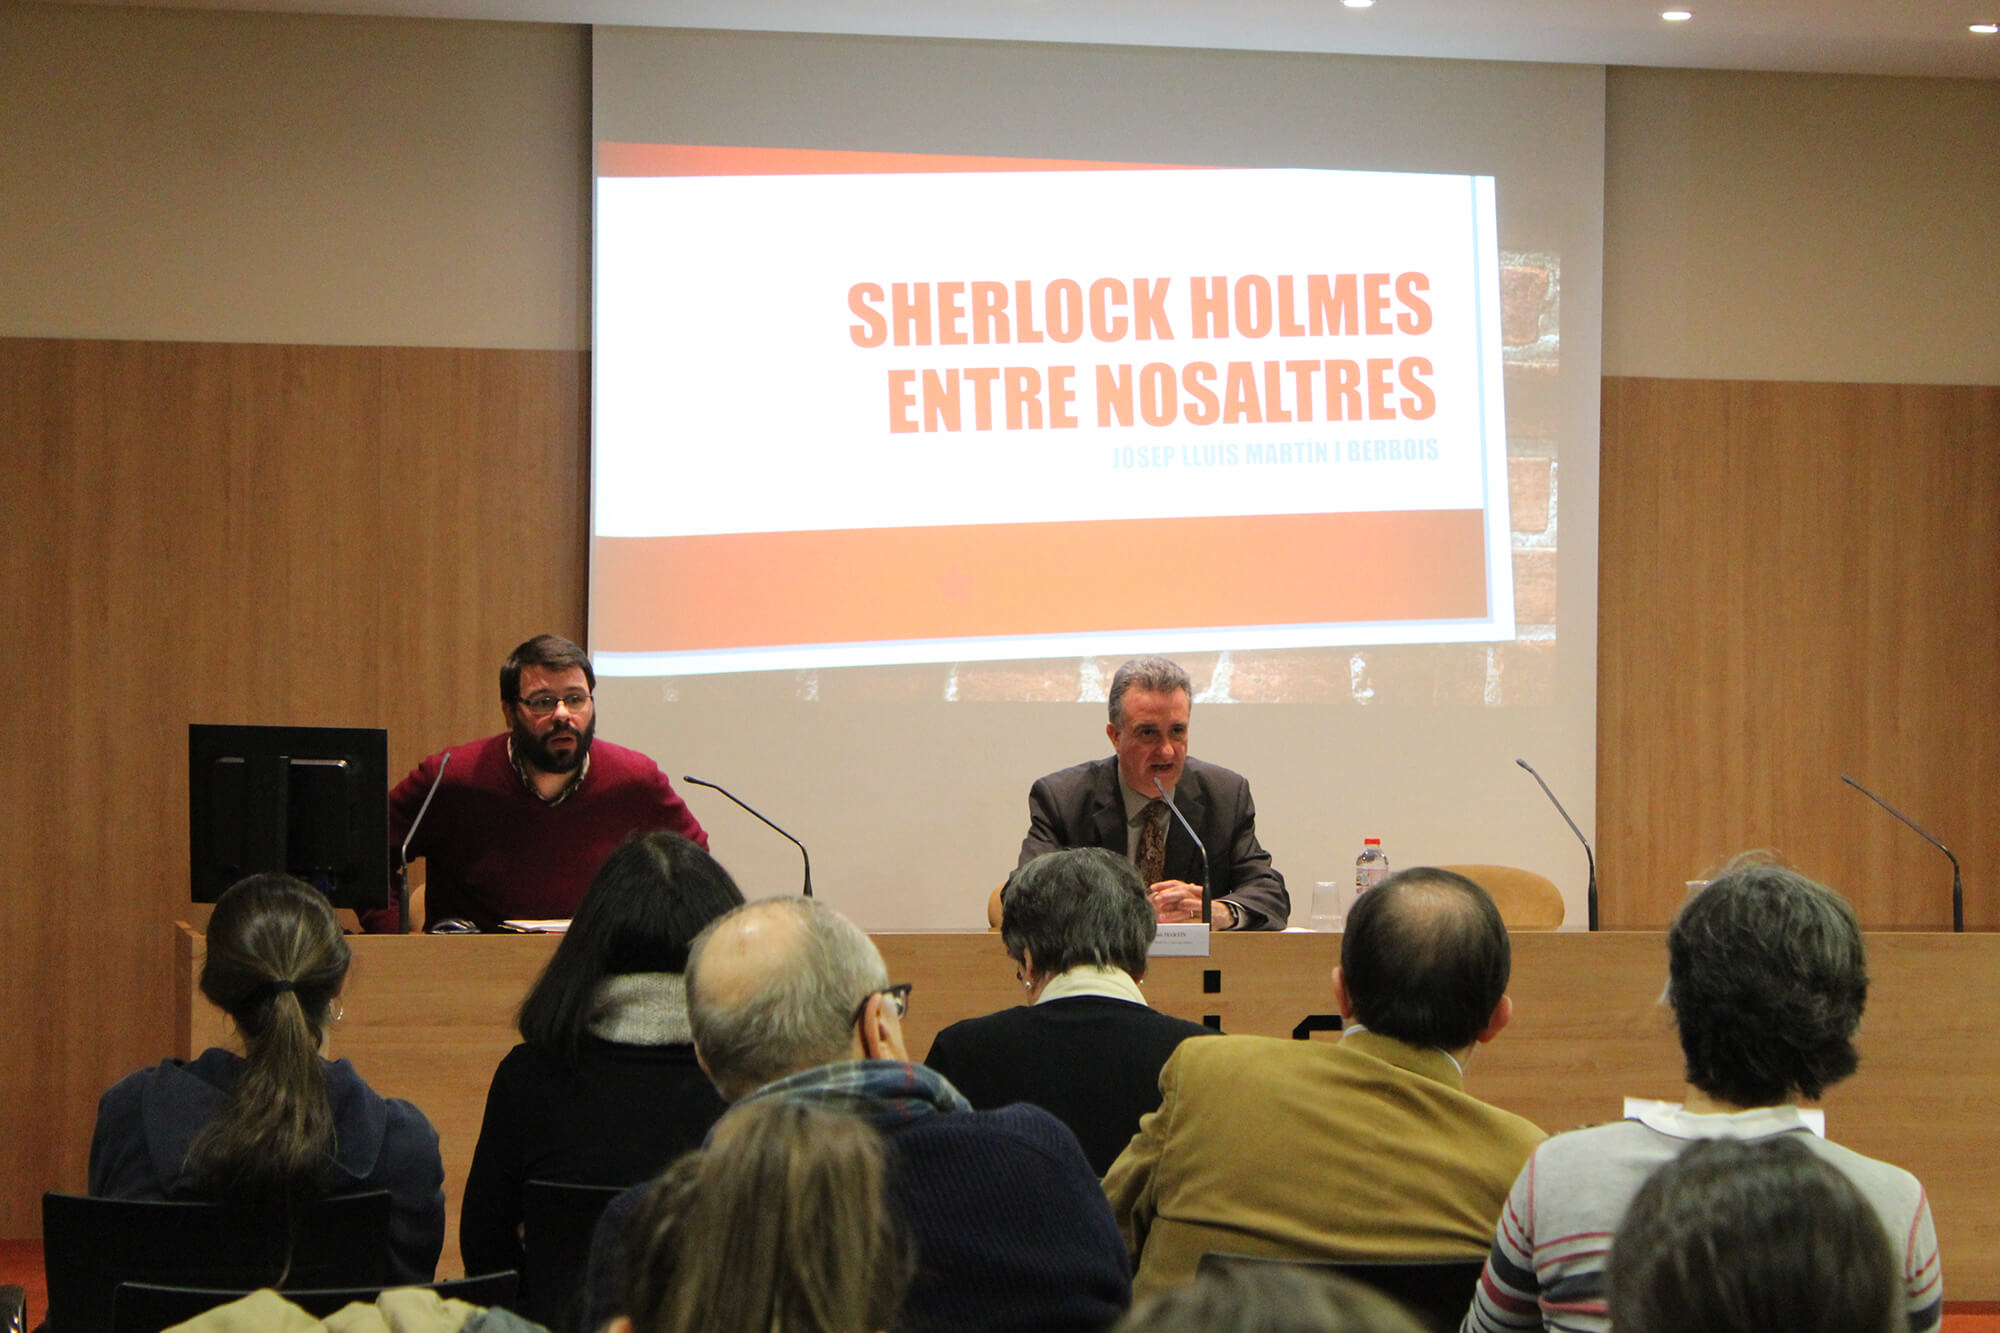 Jordi Puigdomènech, professor de UIC Barcelona. Conferència “La influència del cinema en la narrativa de Carlos Pujol: adaptacions de Sherlock Holmes”. UIC Barcelona, 30 de gener del 2019.